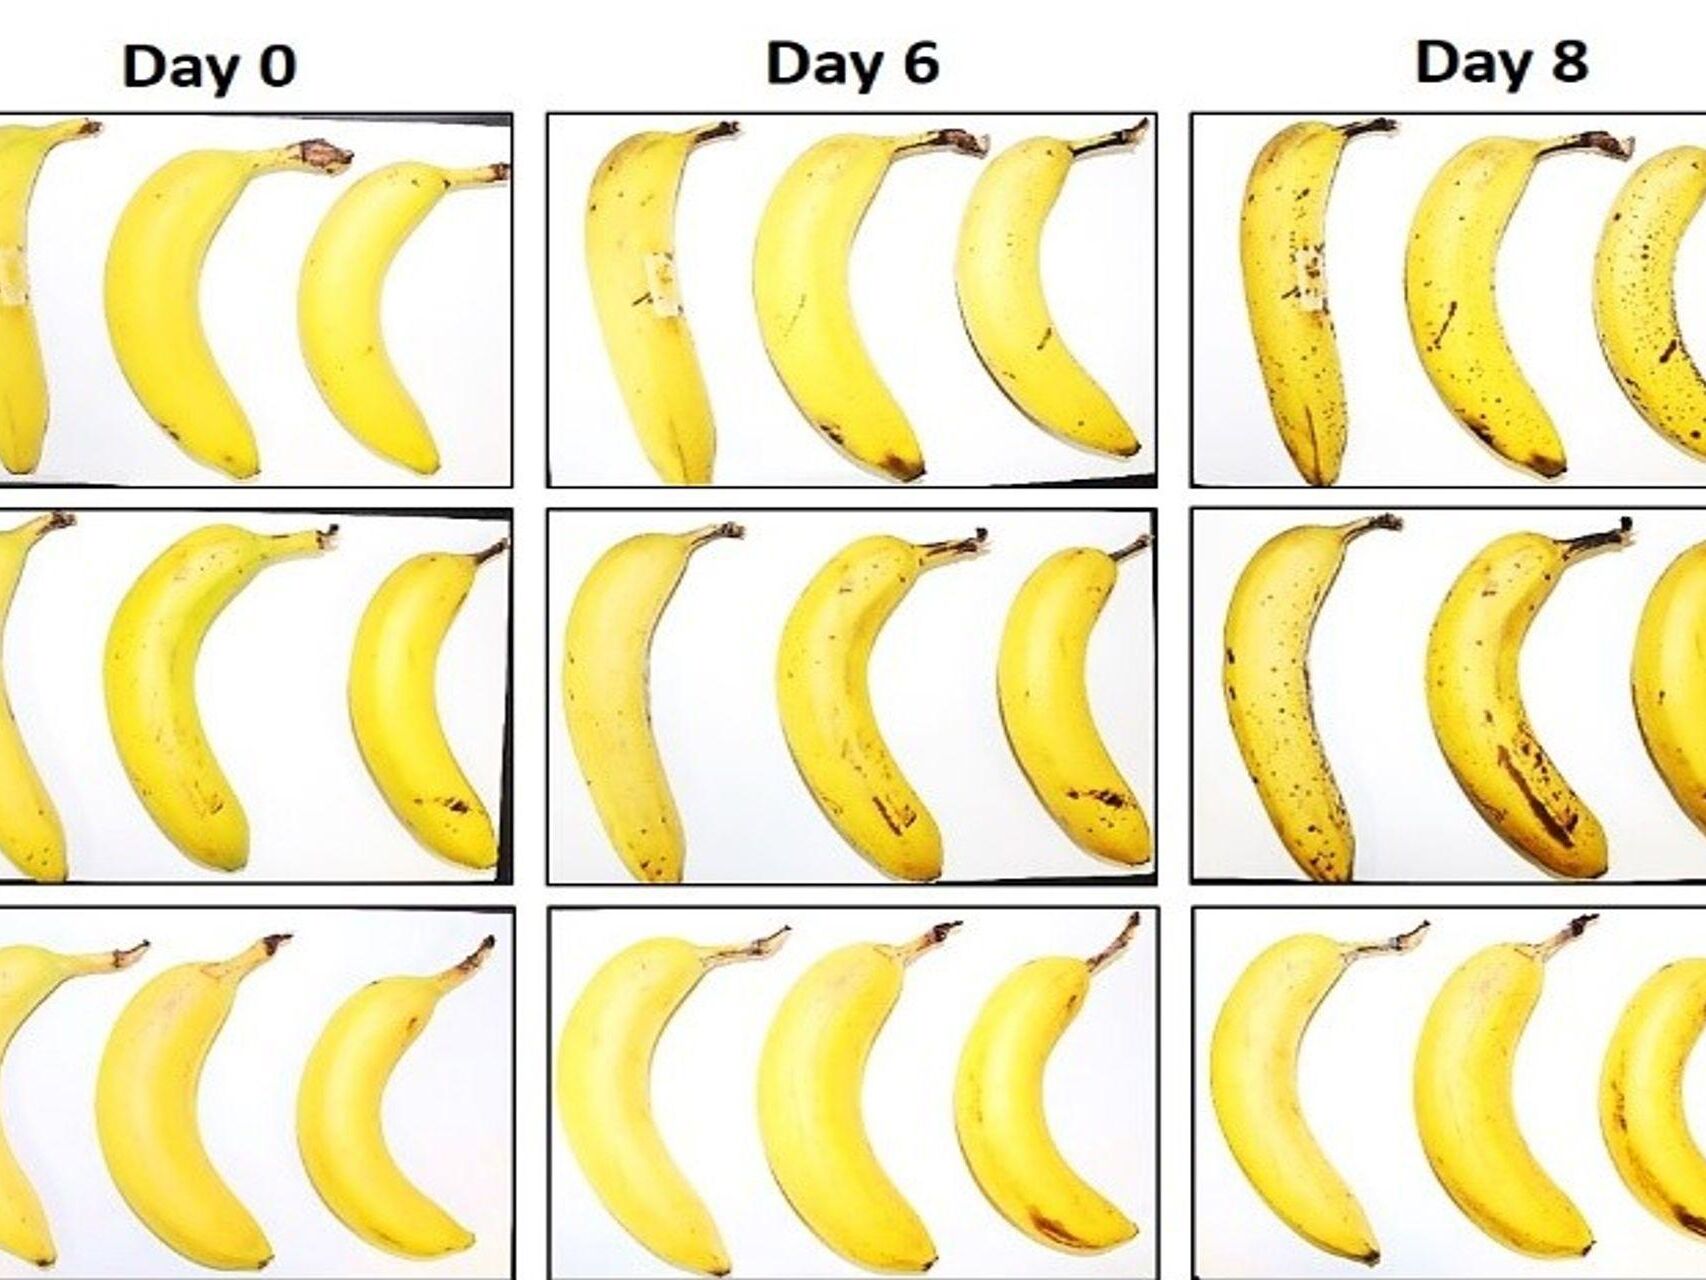 Tri banány, ktoré EMPA a Lidl Švajčiarsko podrobili testu konzervácie s vláknitým celulózovým obalom a bez neho po nule, 6 a 8 dňoch